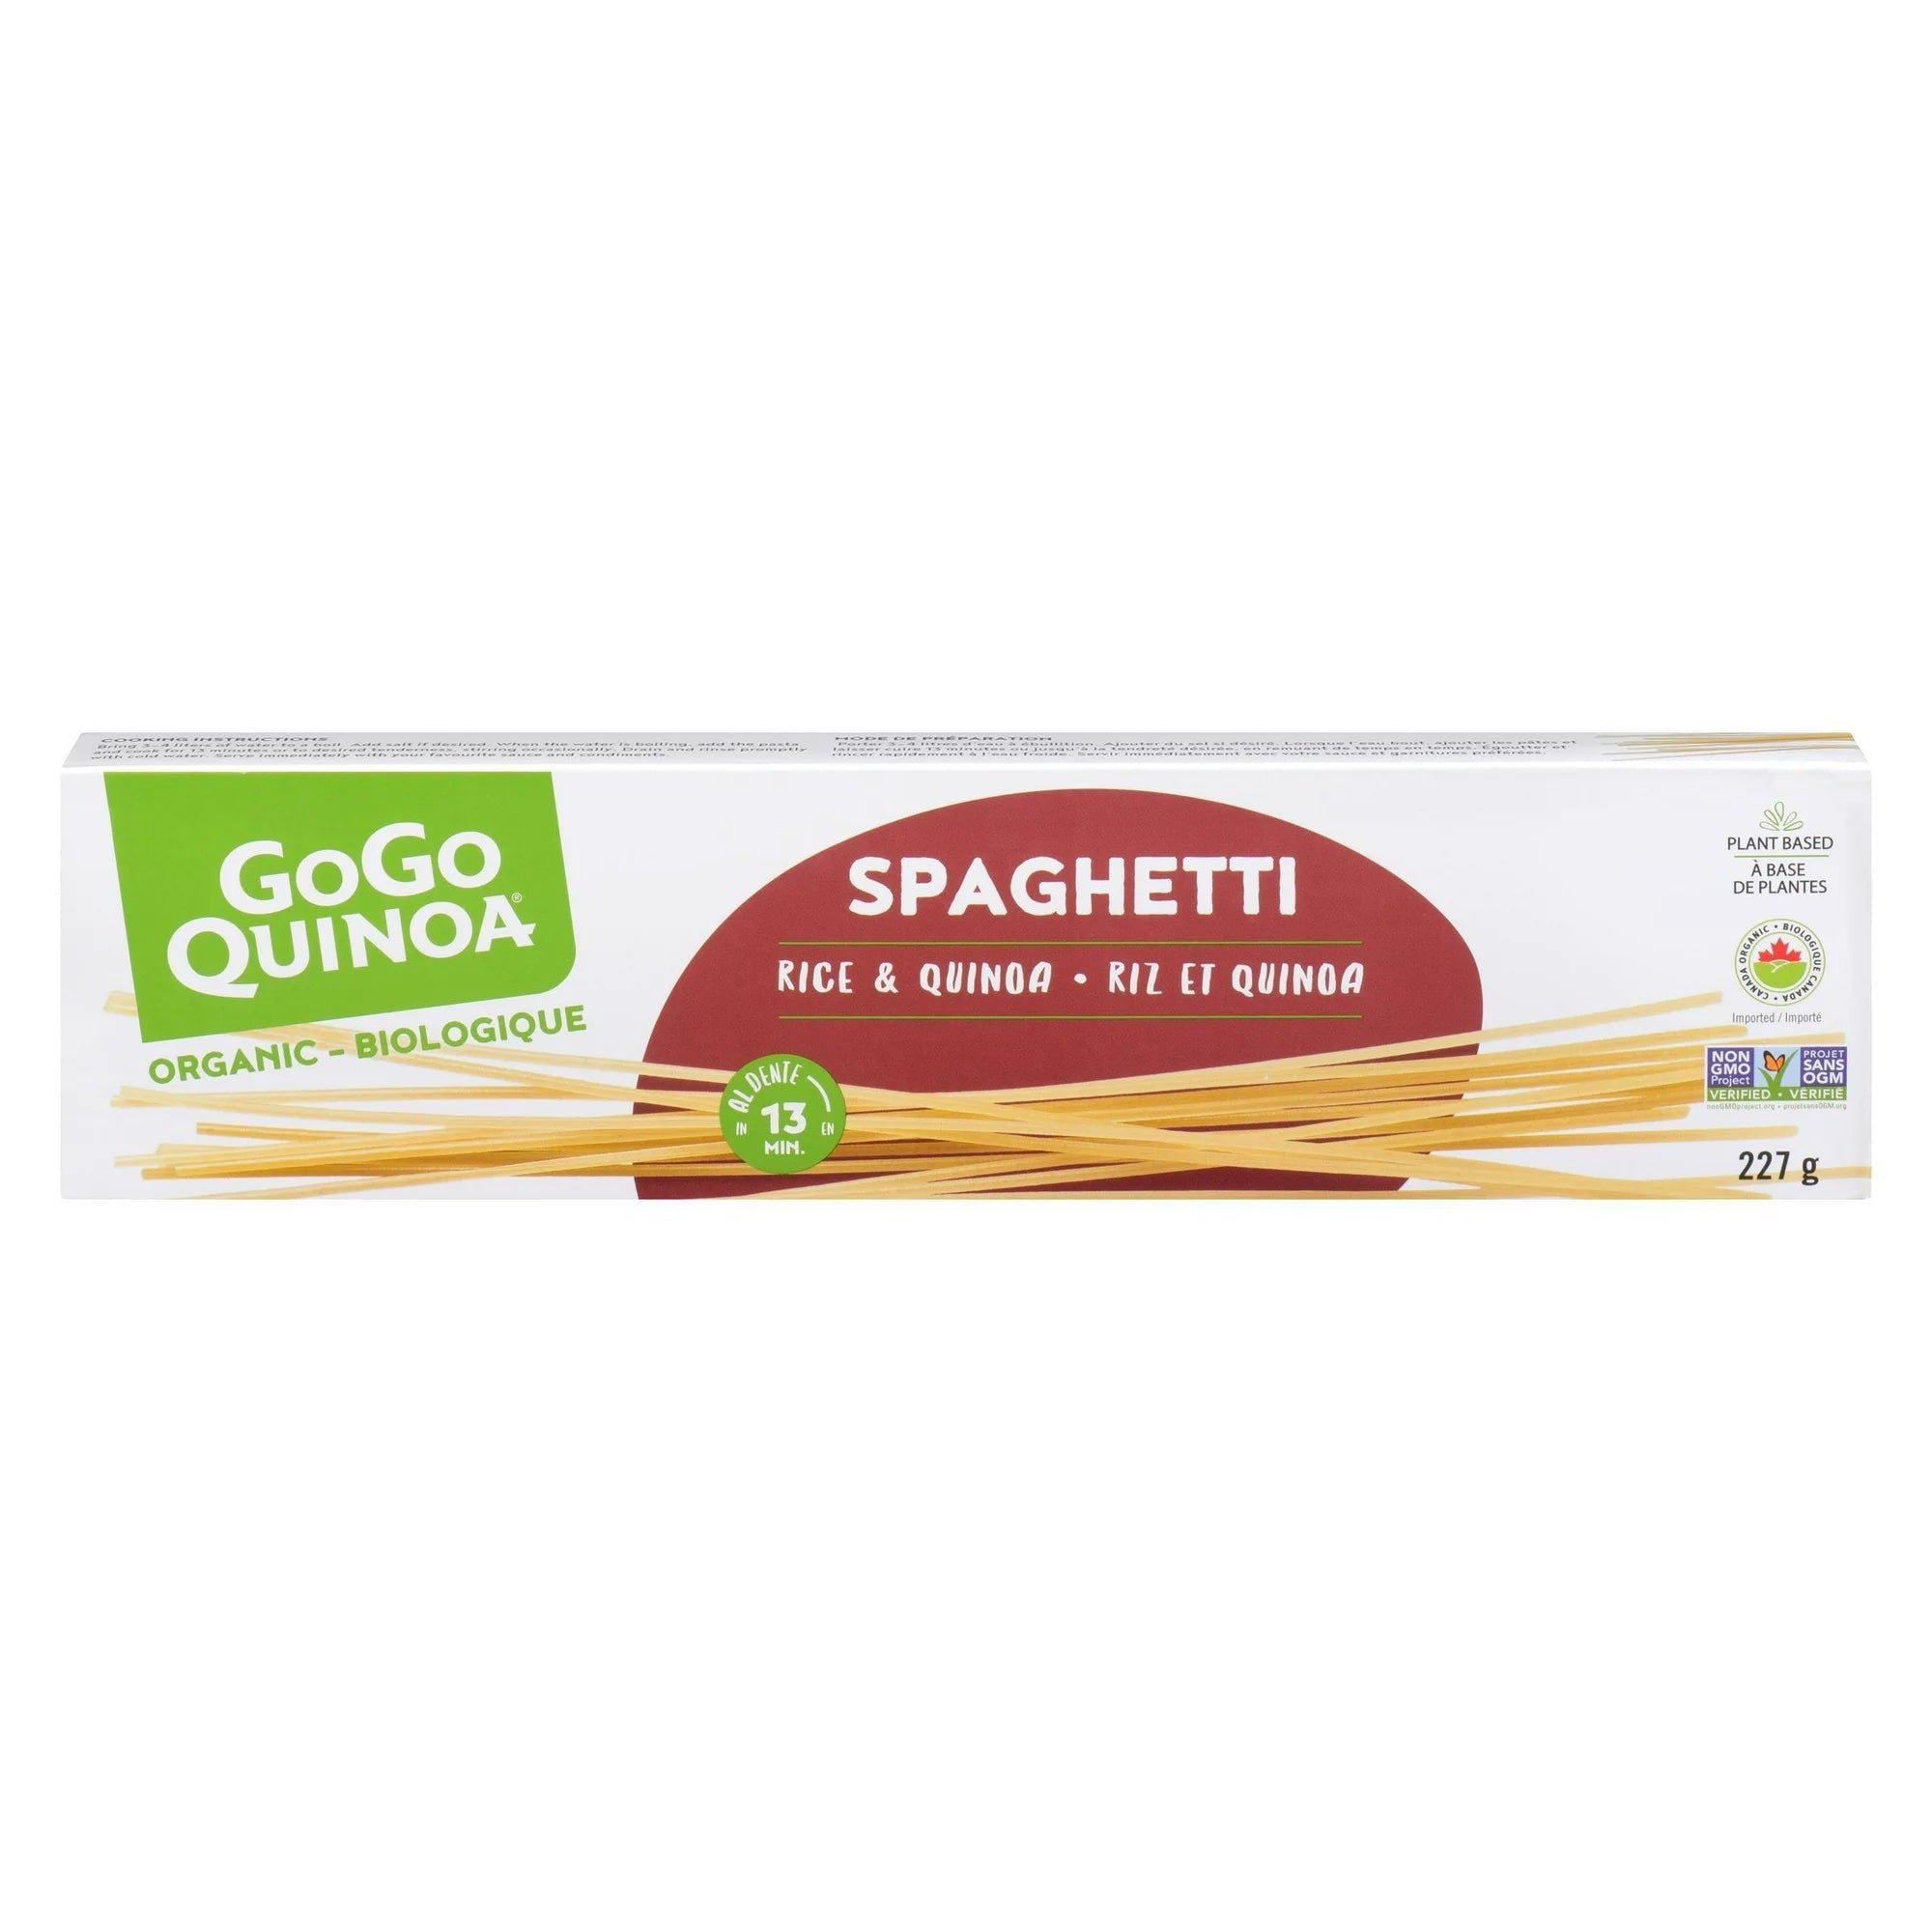 Spaghetti rice and quinoa 227g